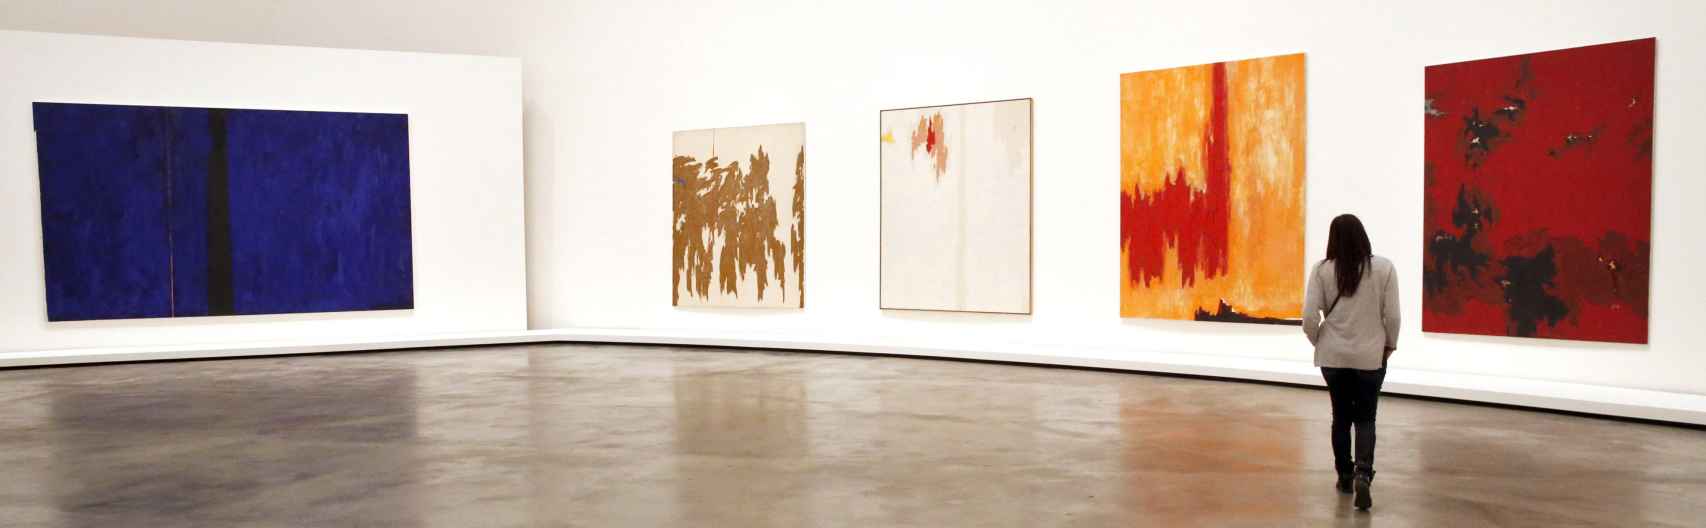 na mujer observa algunas de las obras que componen la exposición Expresionismo Abstracto.